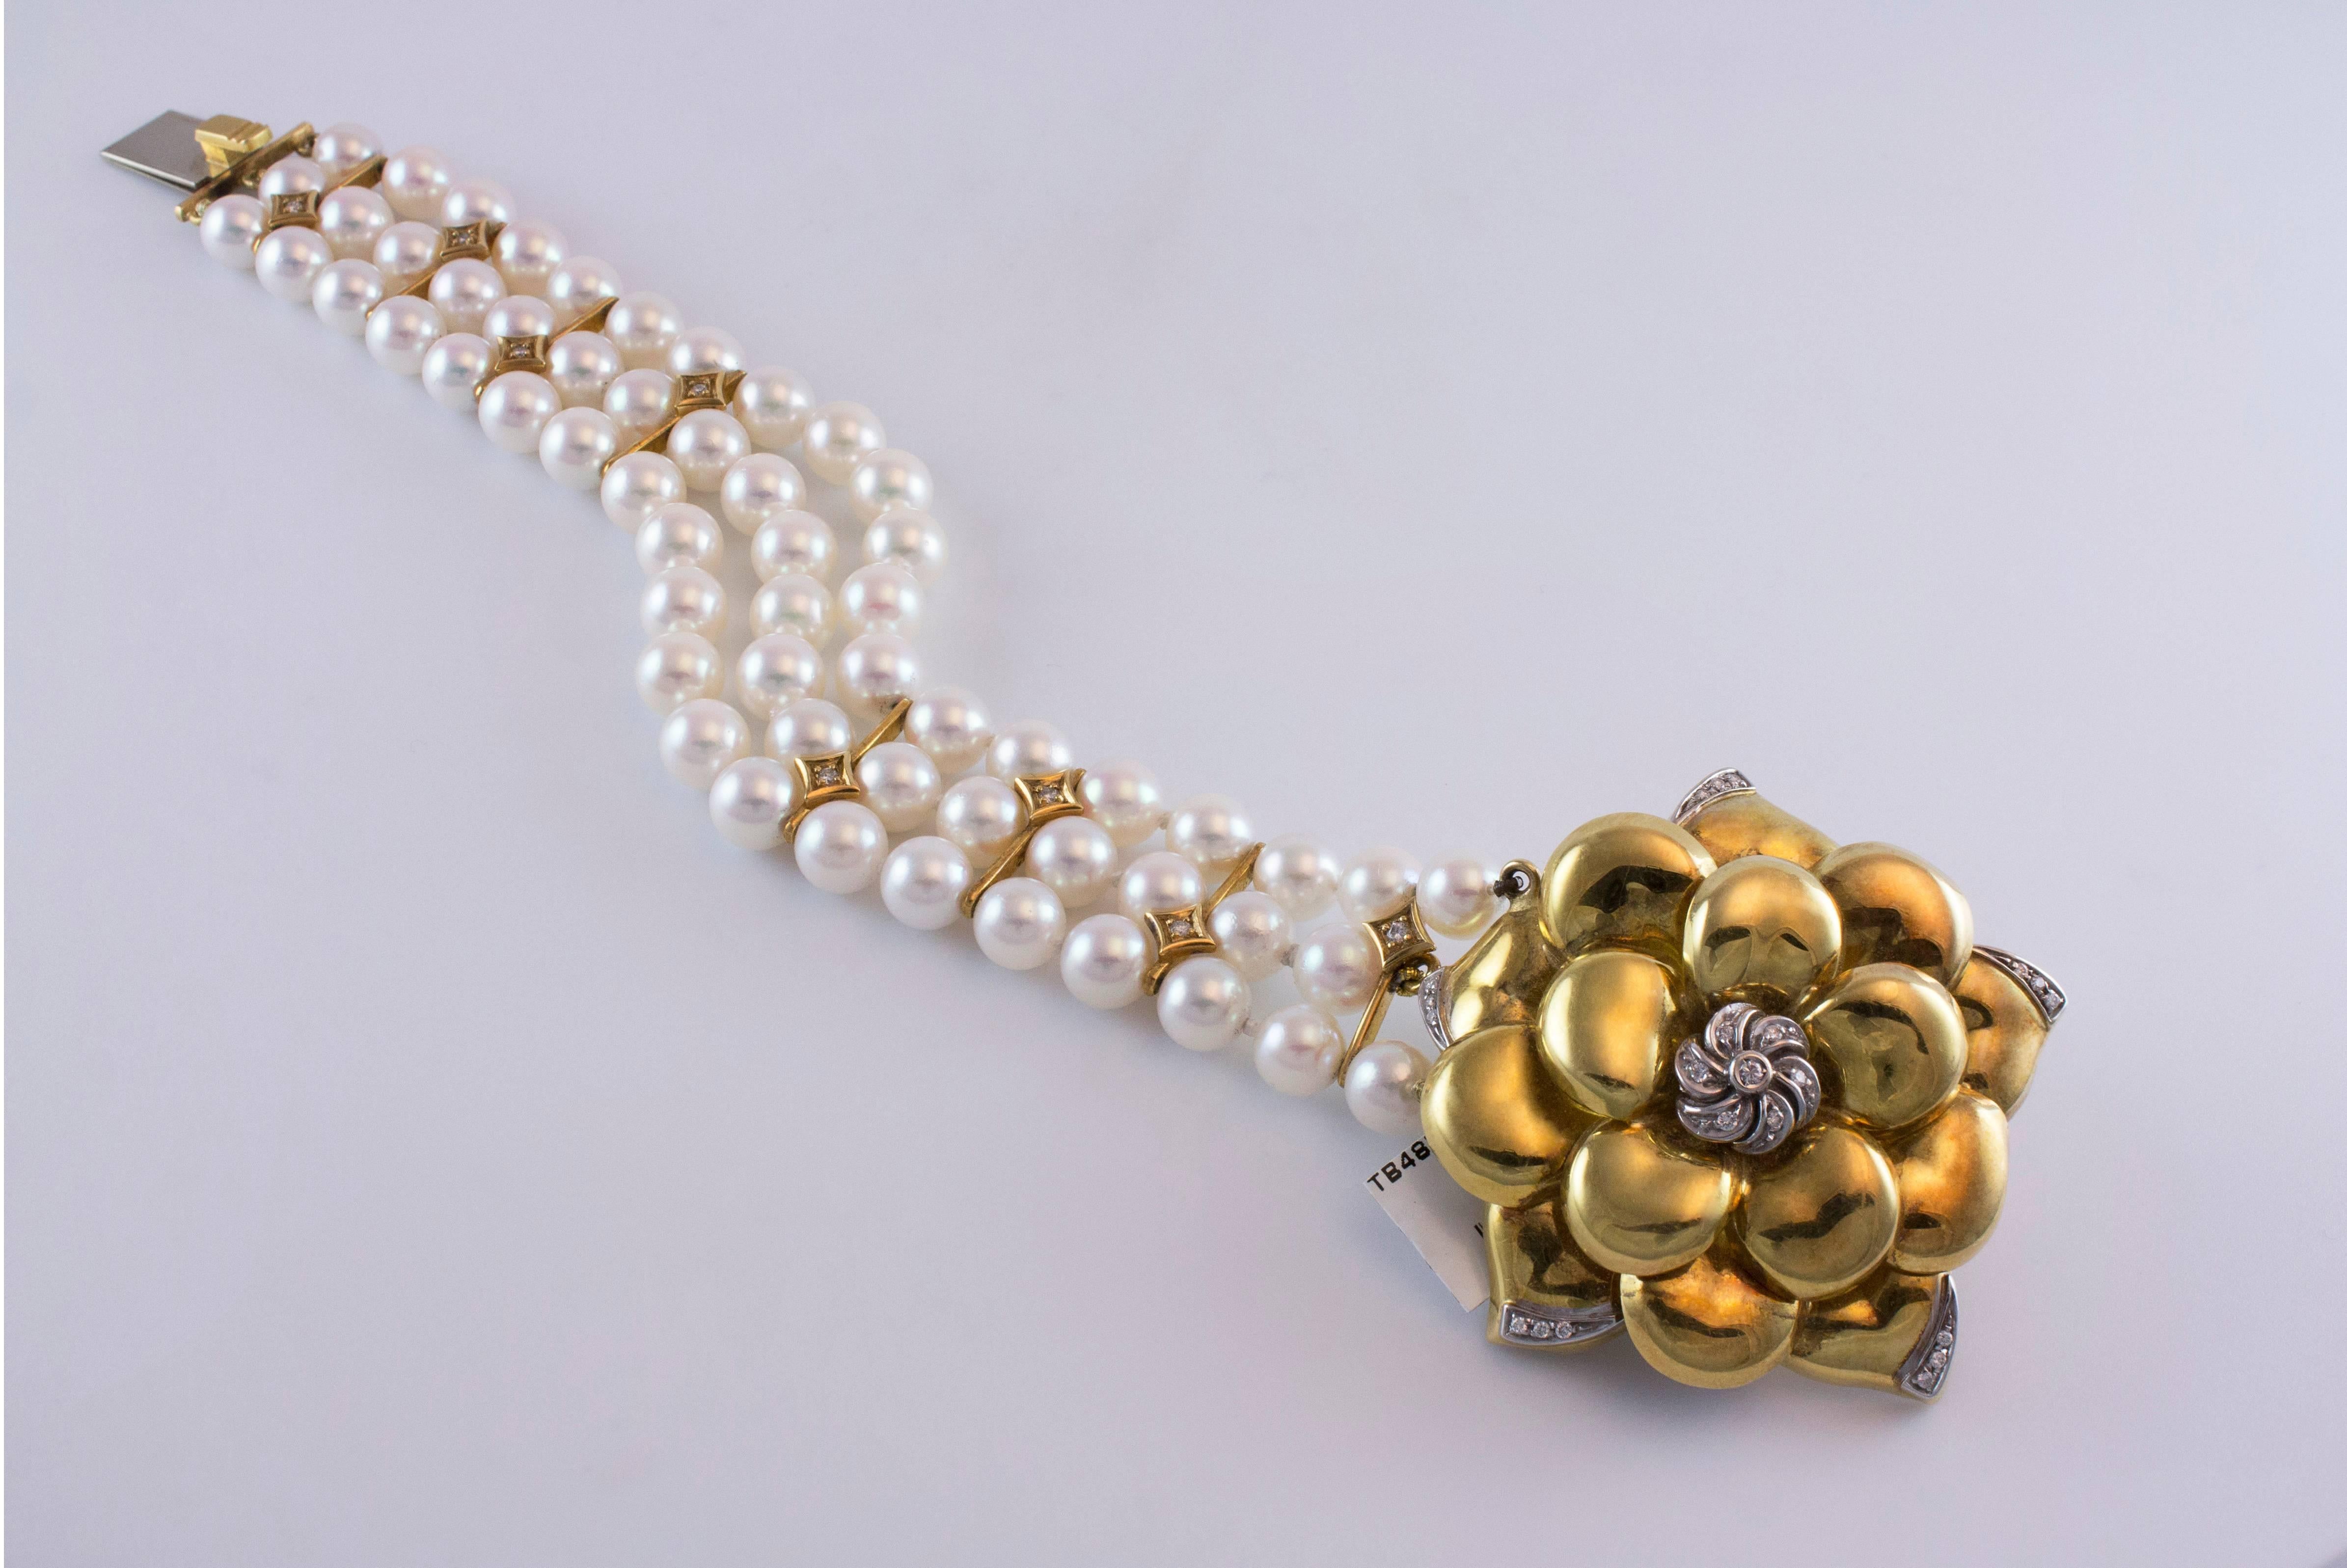 Dieses Armband besteht aus einer Blume aus 18 Karat Gelbgold, die durch runde Brillanten am dreireihigen Zuchtperlenstrang akzentuiert wird. Gesamtgewicht der Diamanten ca. 0,30ct. Die Perlen haben einen tollen Glanz und einen schönen rosafarbenen